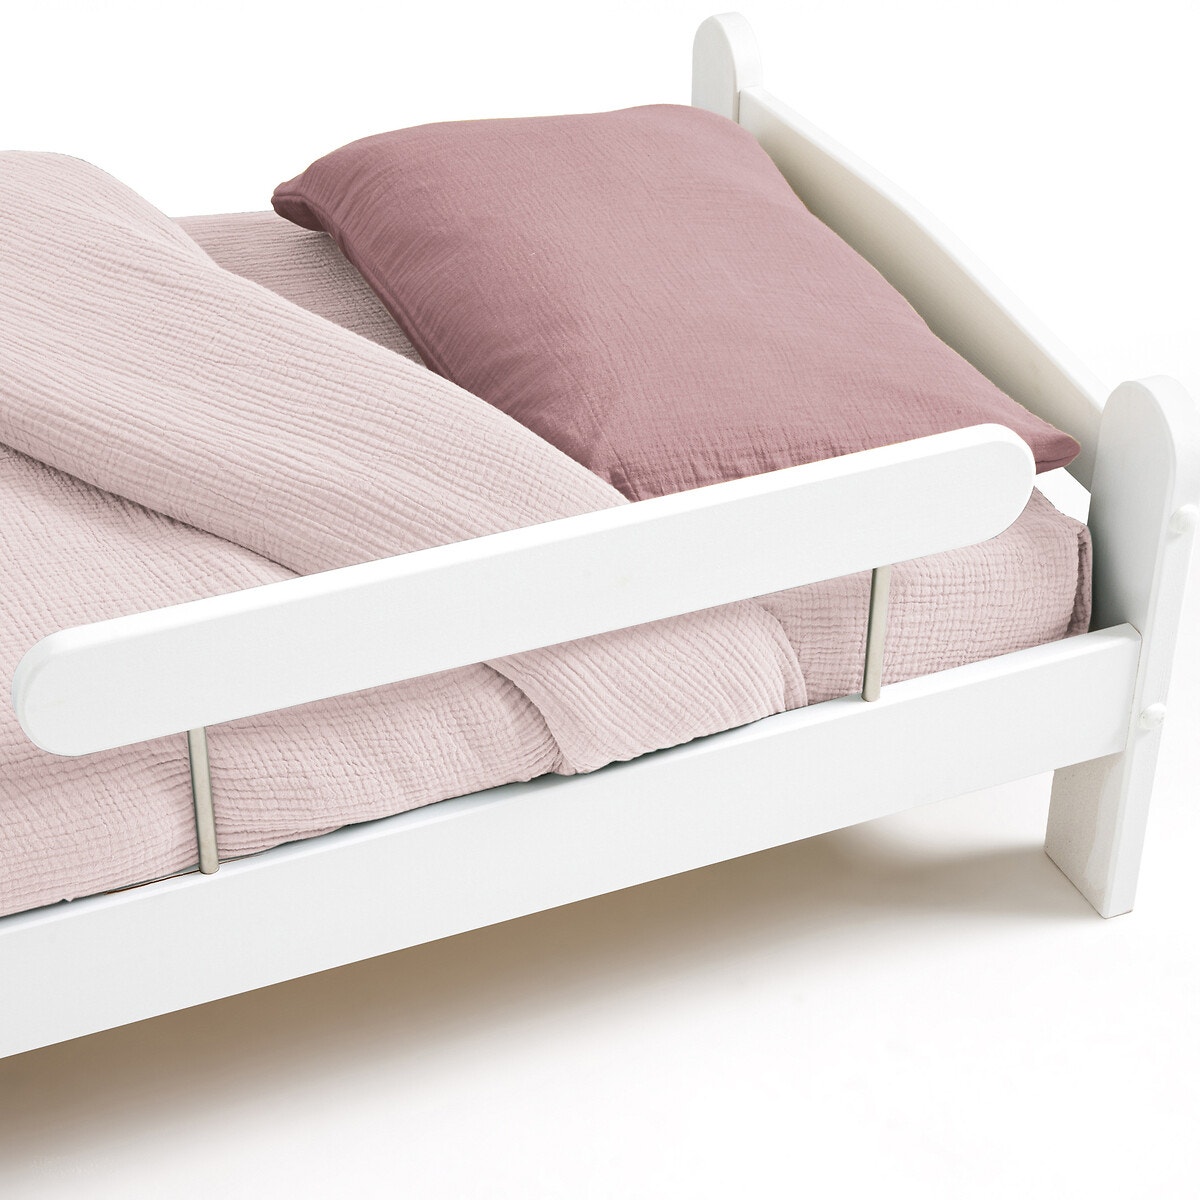 Συμπαγές κρεβάτι μωρού από πεύκο με φράγμα ασφαλείας, Loan